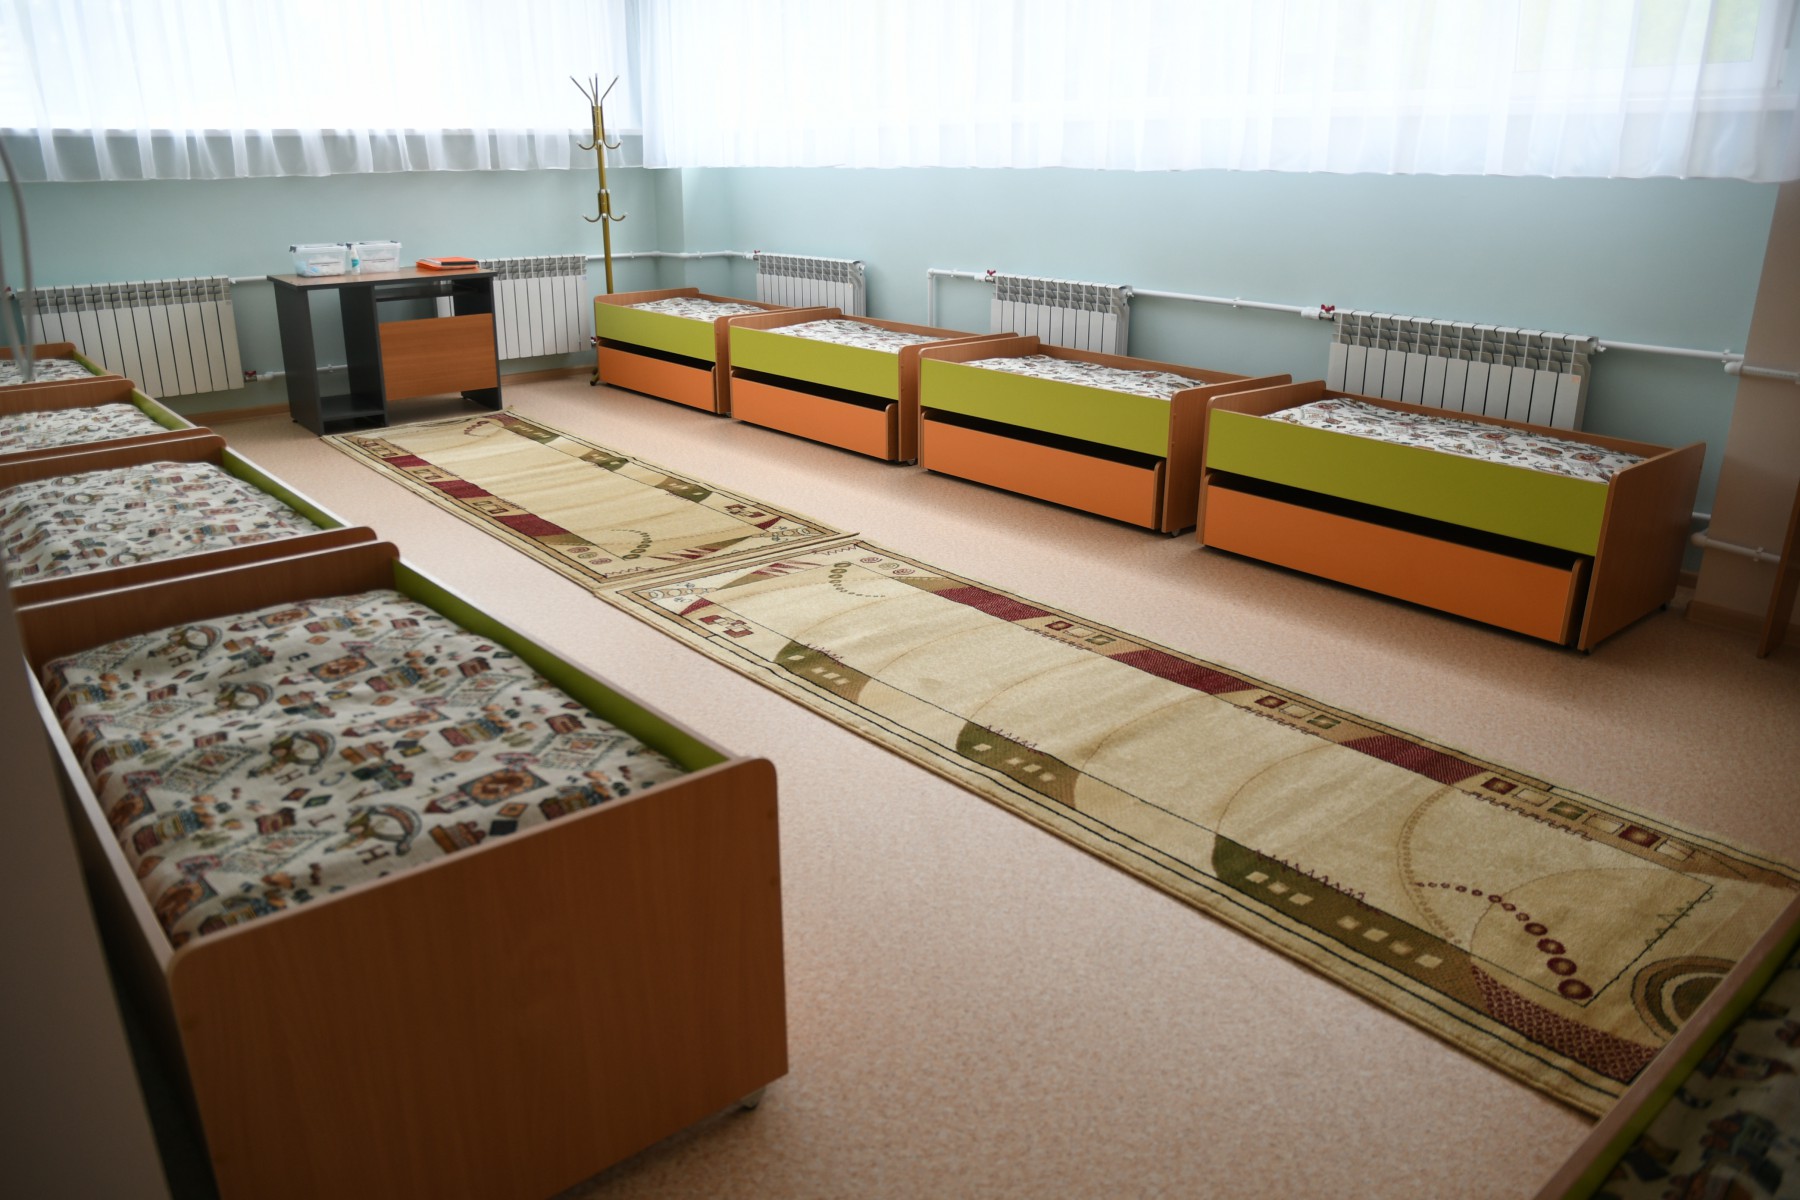 Спальная комната с двухъярусными кроватями. Фото Владимира Коцюбы-Белых